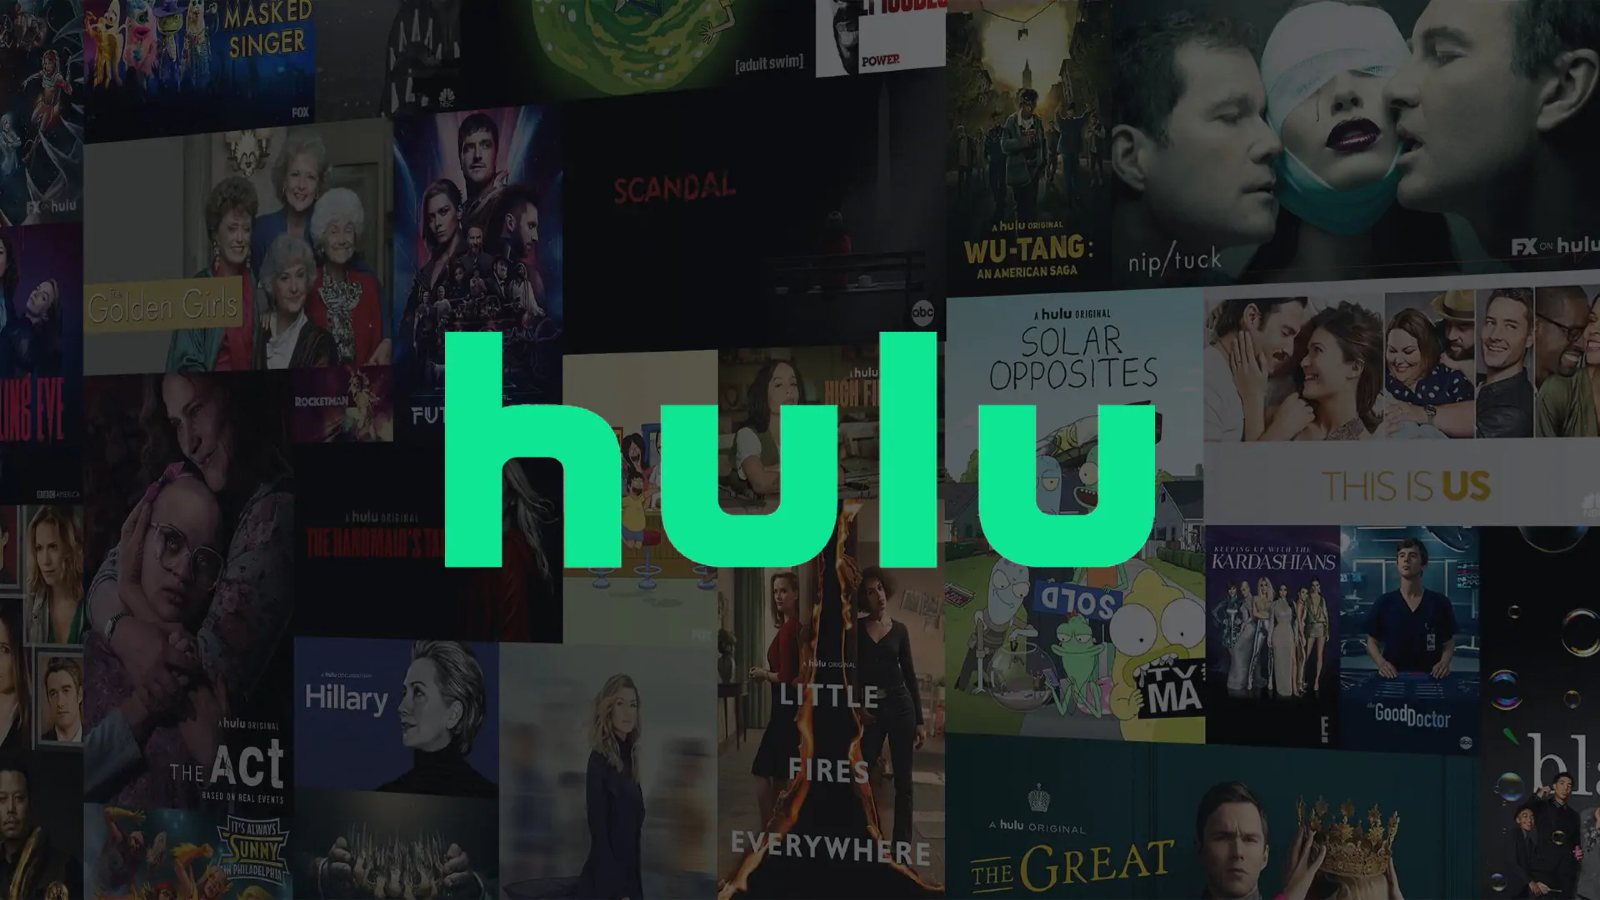 hulu, Hulu: Αποκτά υποστήριξη για το SharePlay